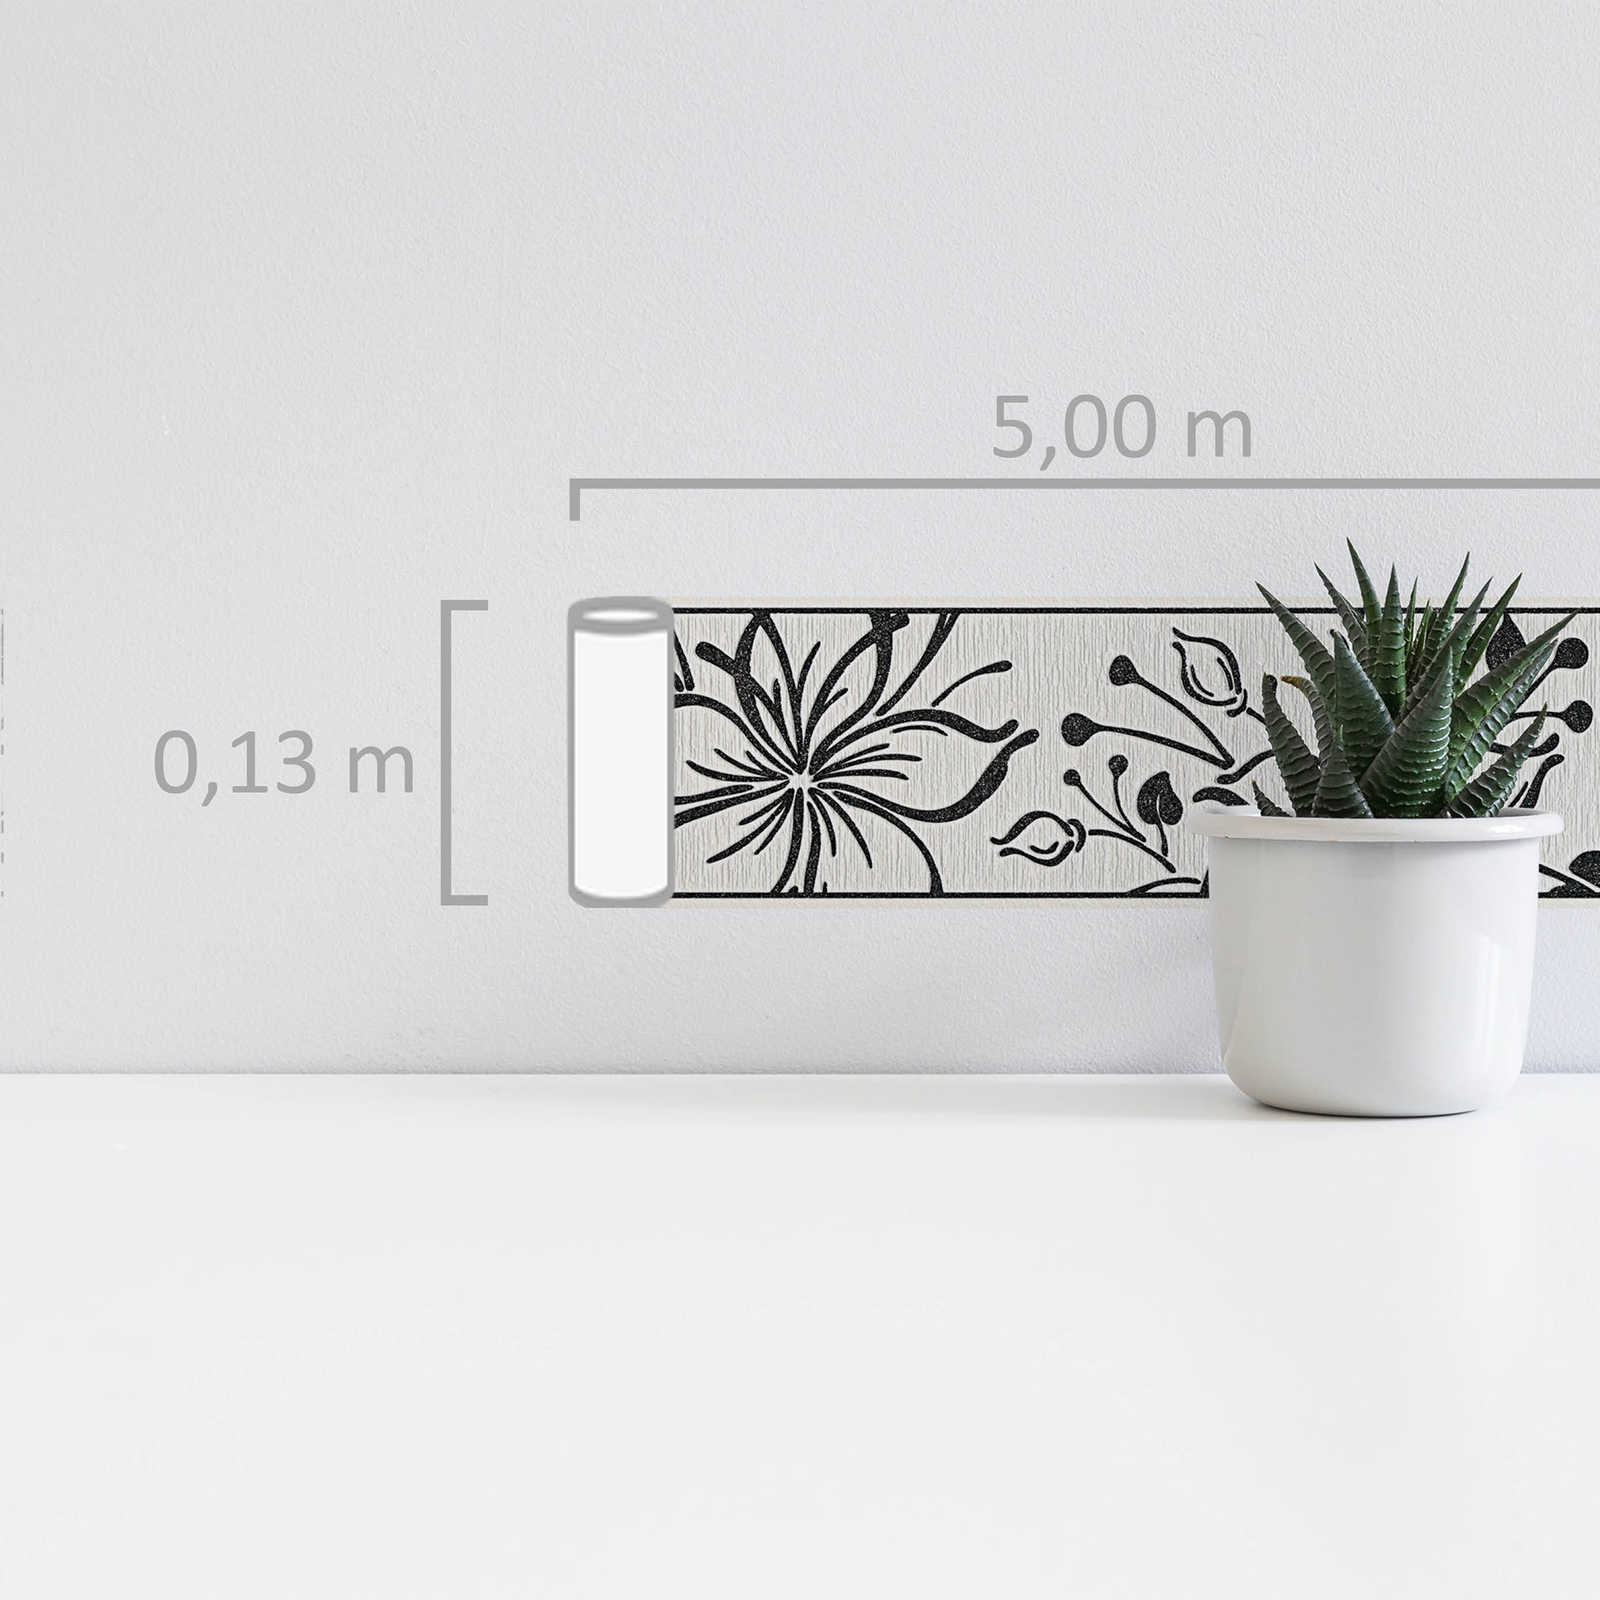             Selbstklebende Tapetenbordüre mit floralem Muster – Schwarz, Weiß
        